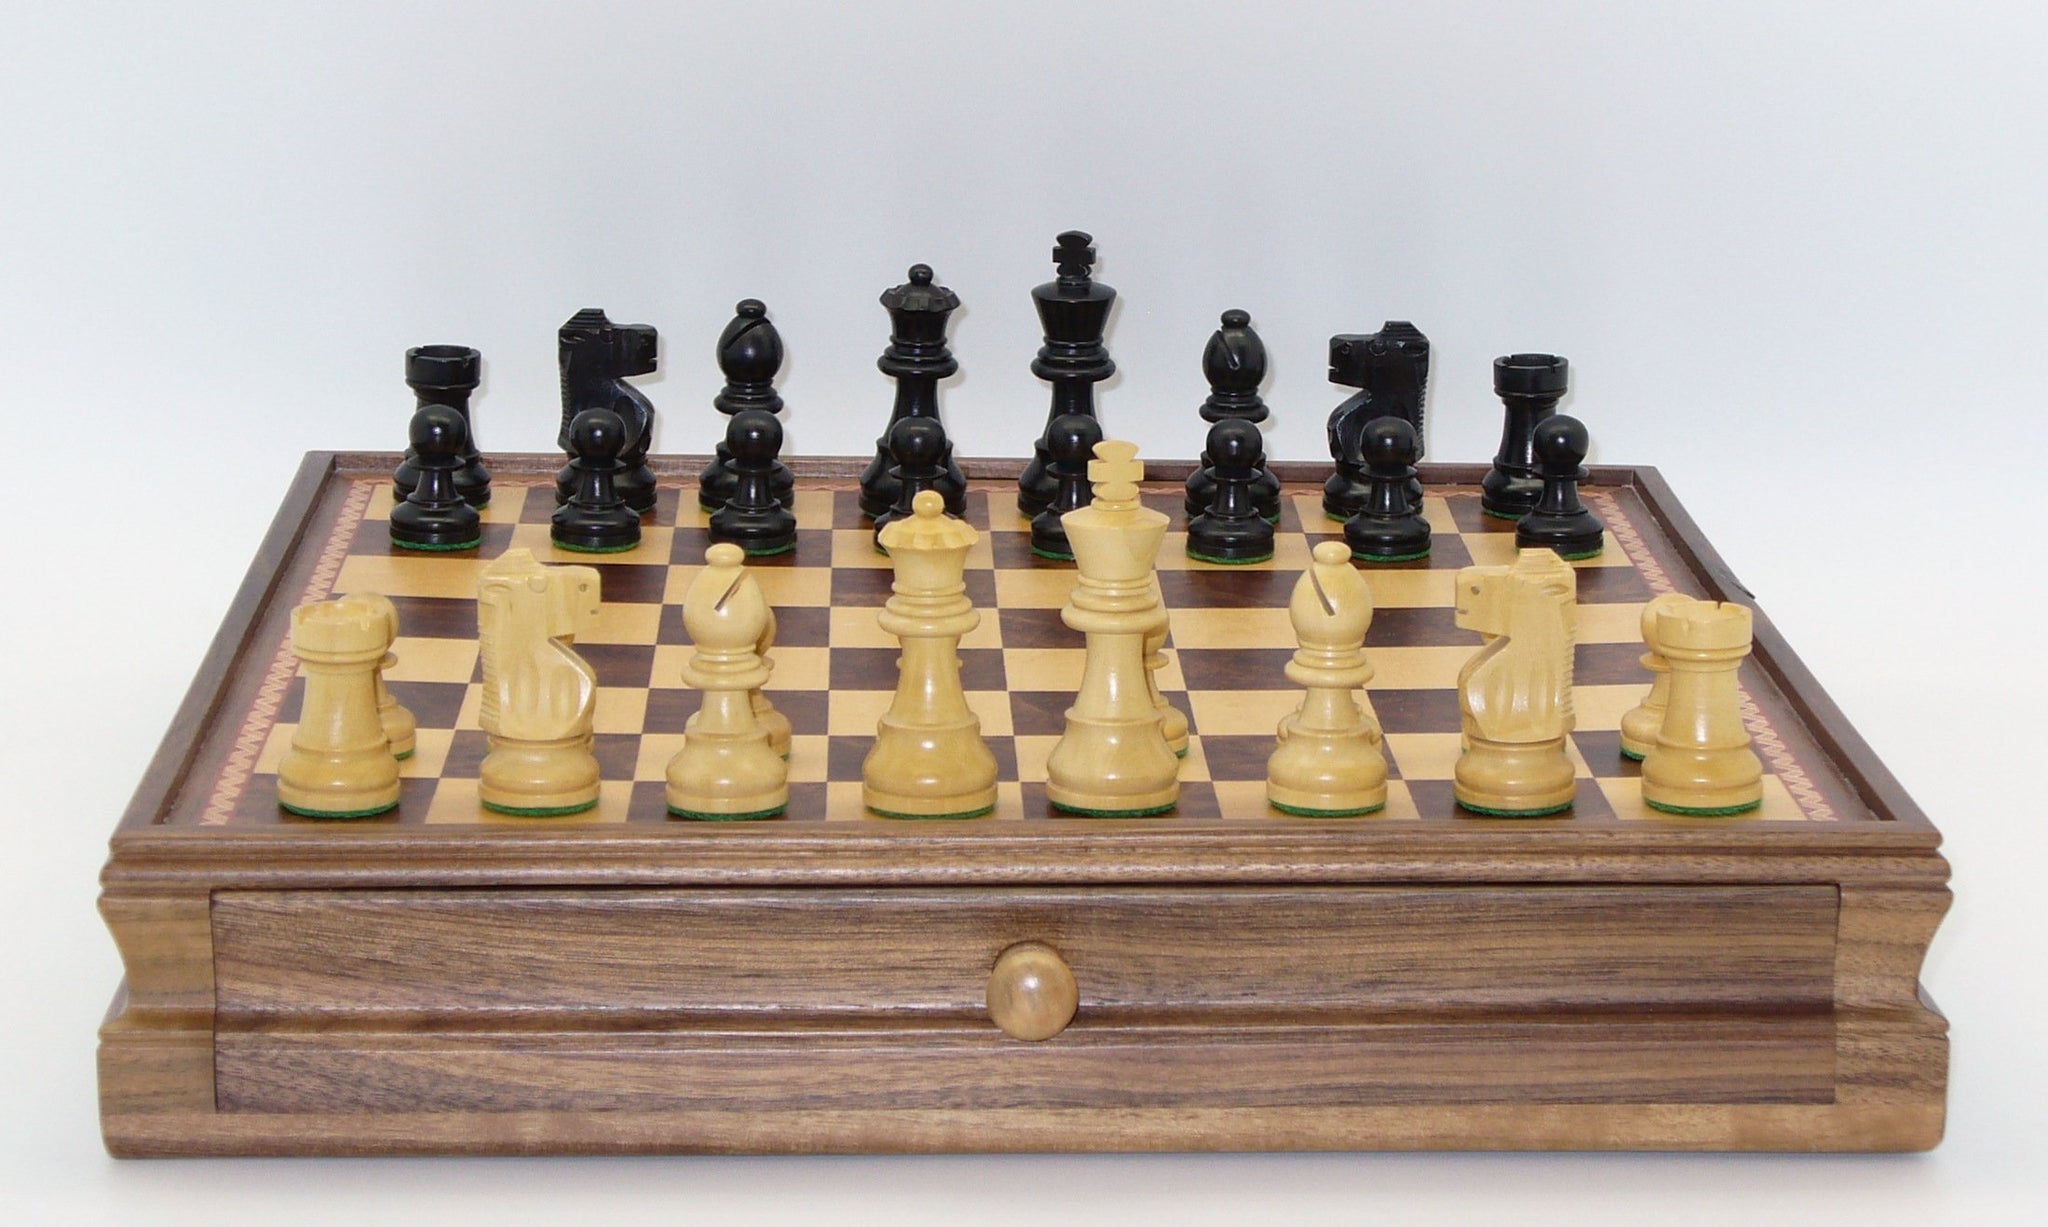 Chess Set - Small Black French Knight Chessmen on Walnut/Maple Chest